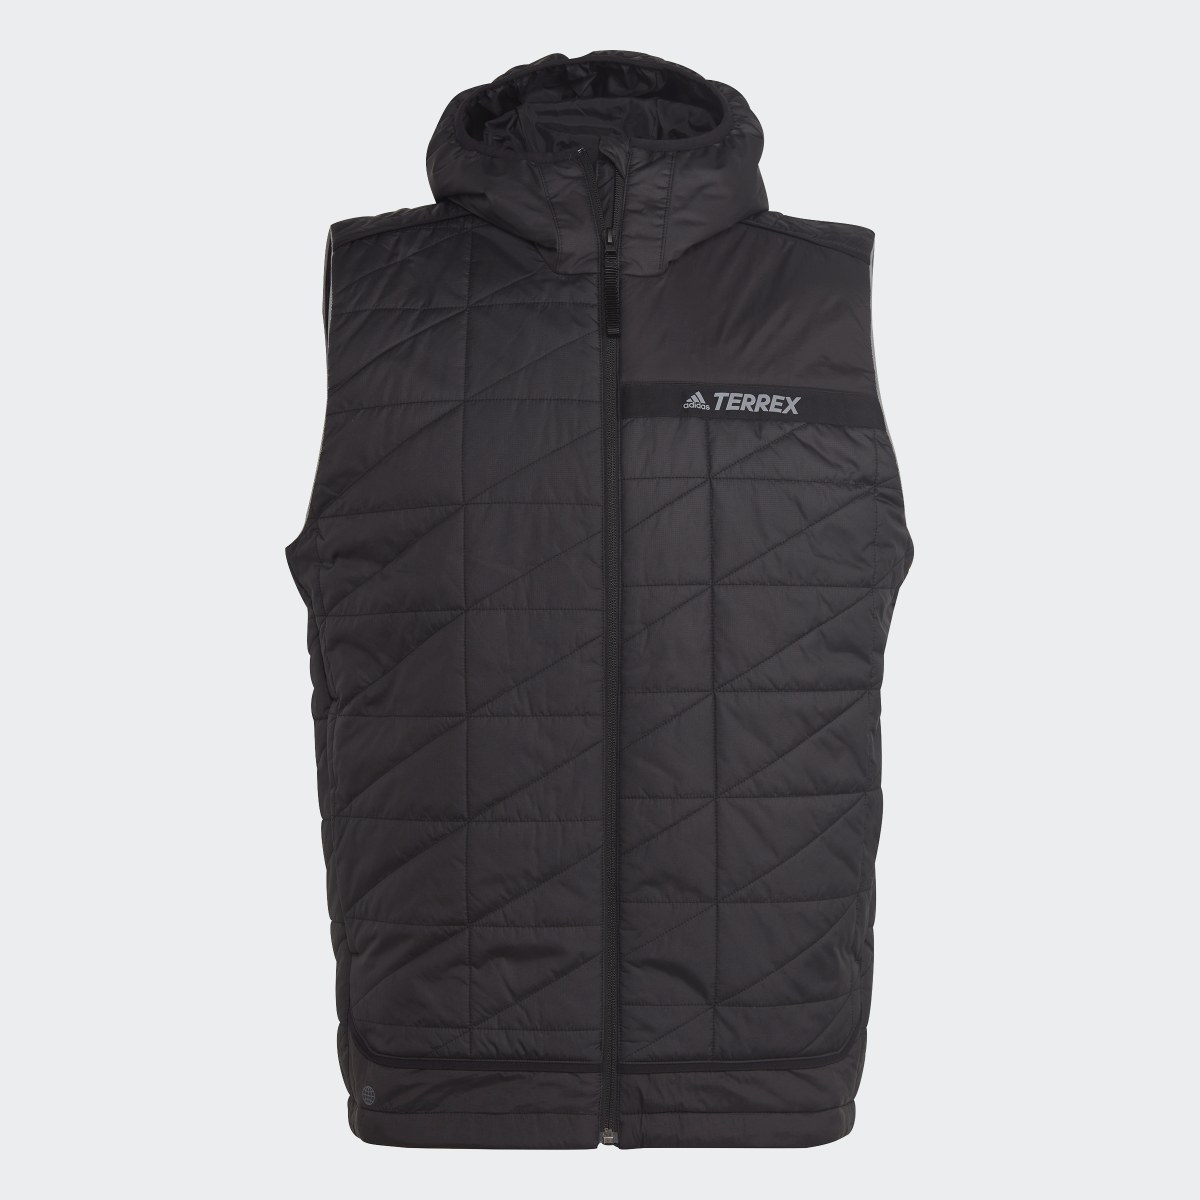 Adidas Terrex Multi Insulated Vest. 5